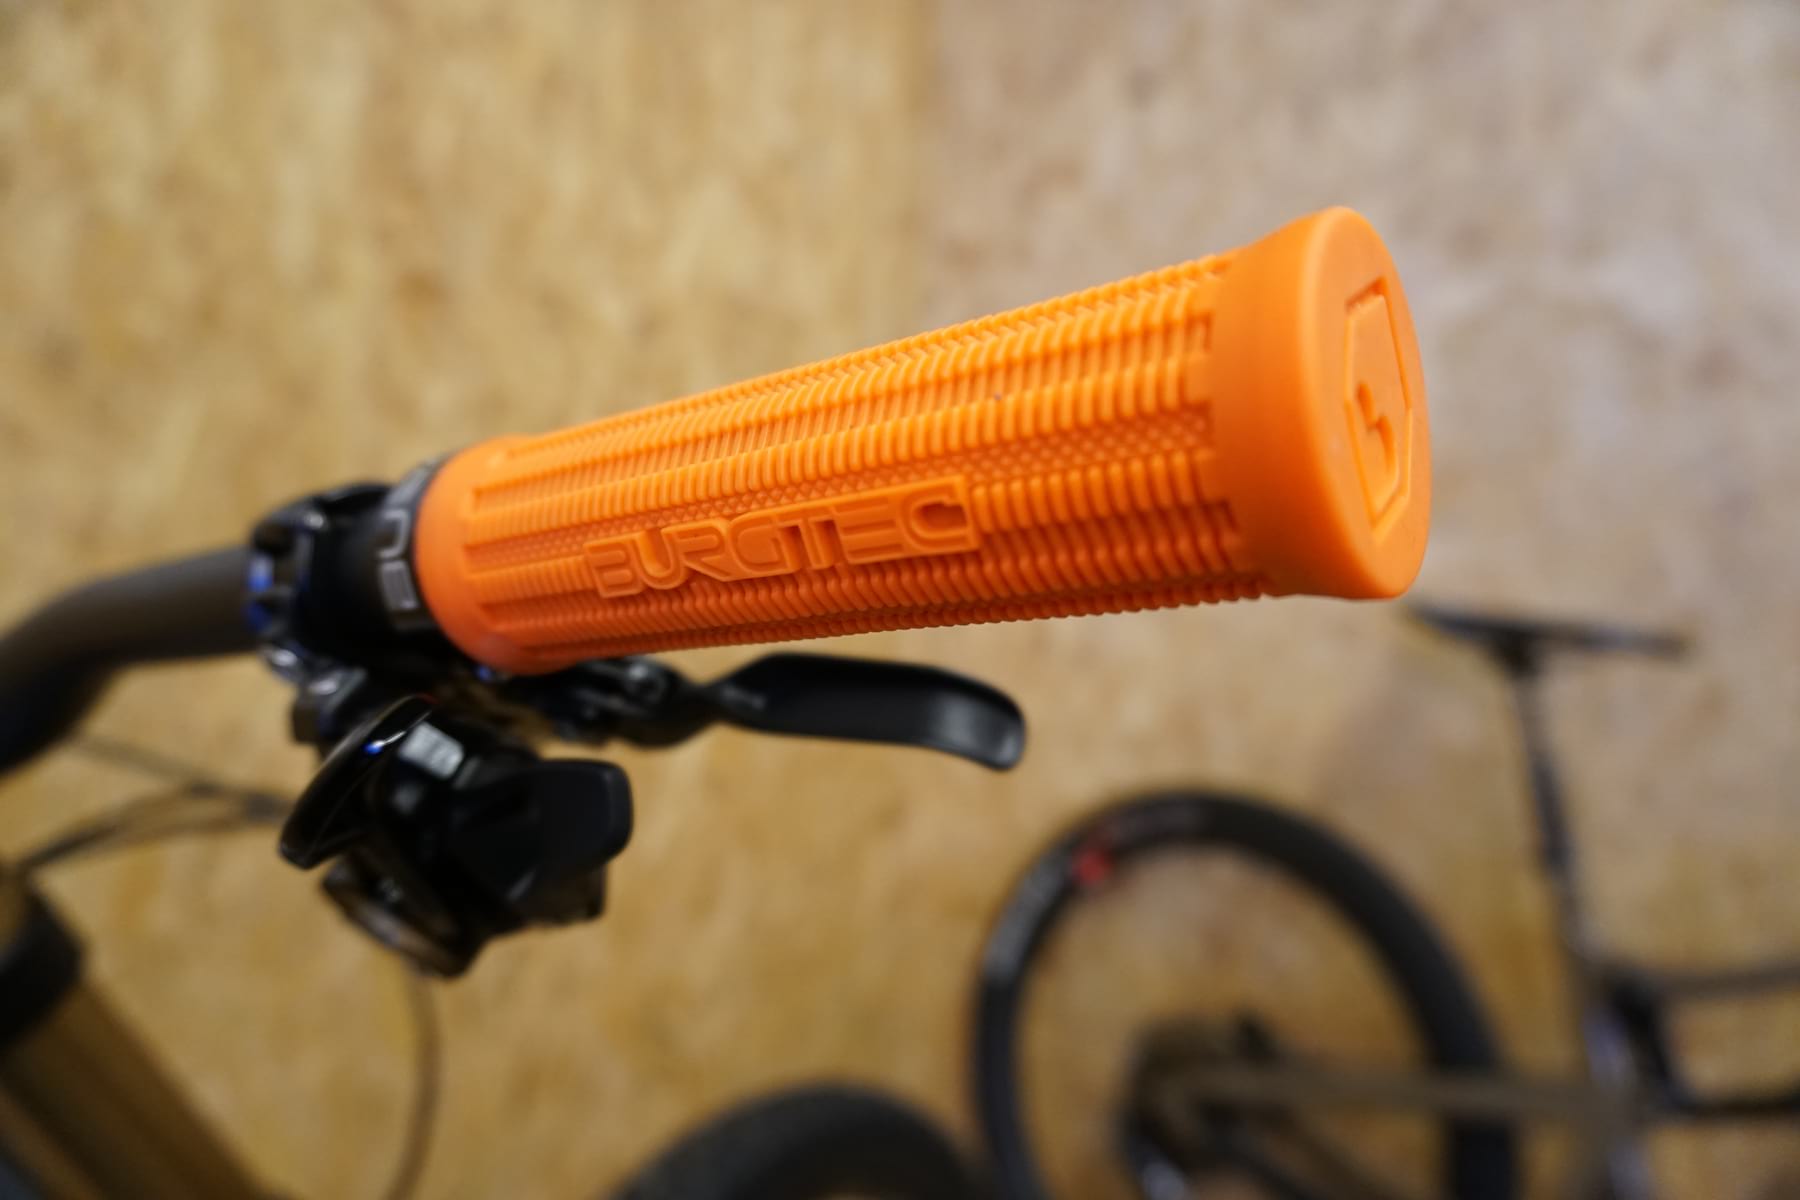 burgtec pedals orange